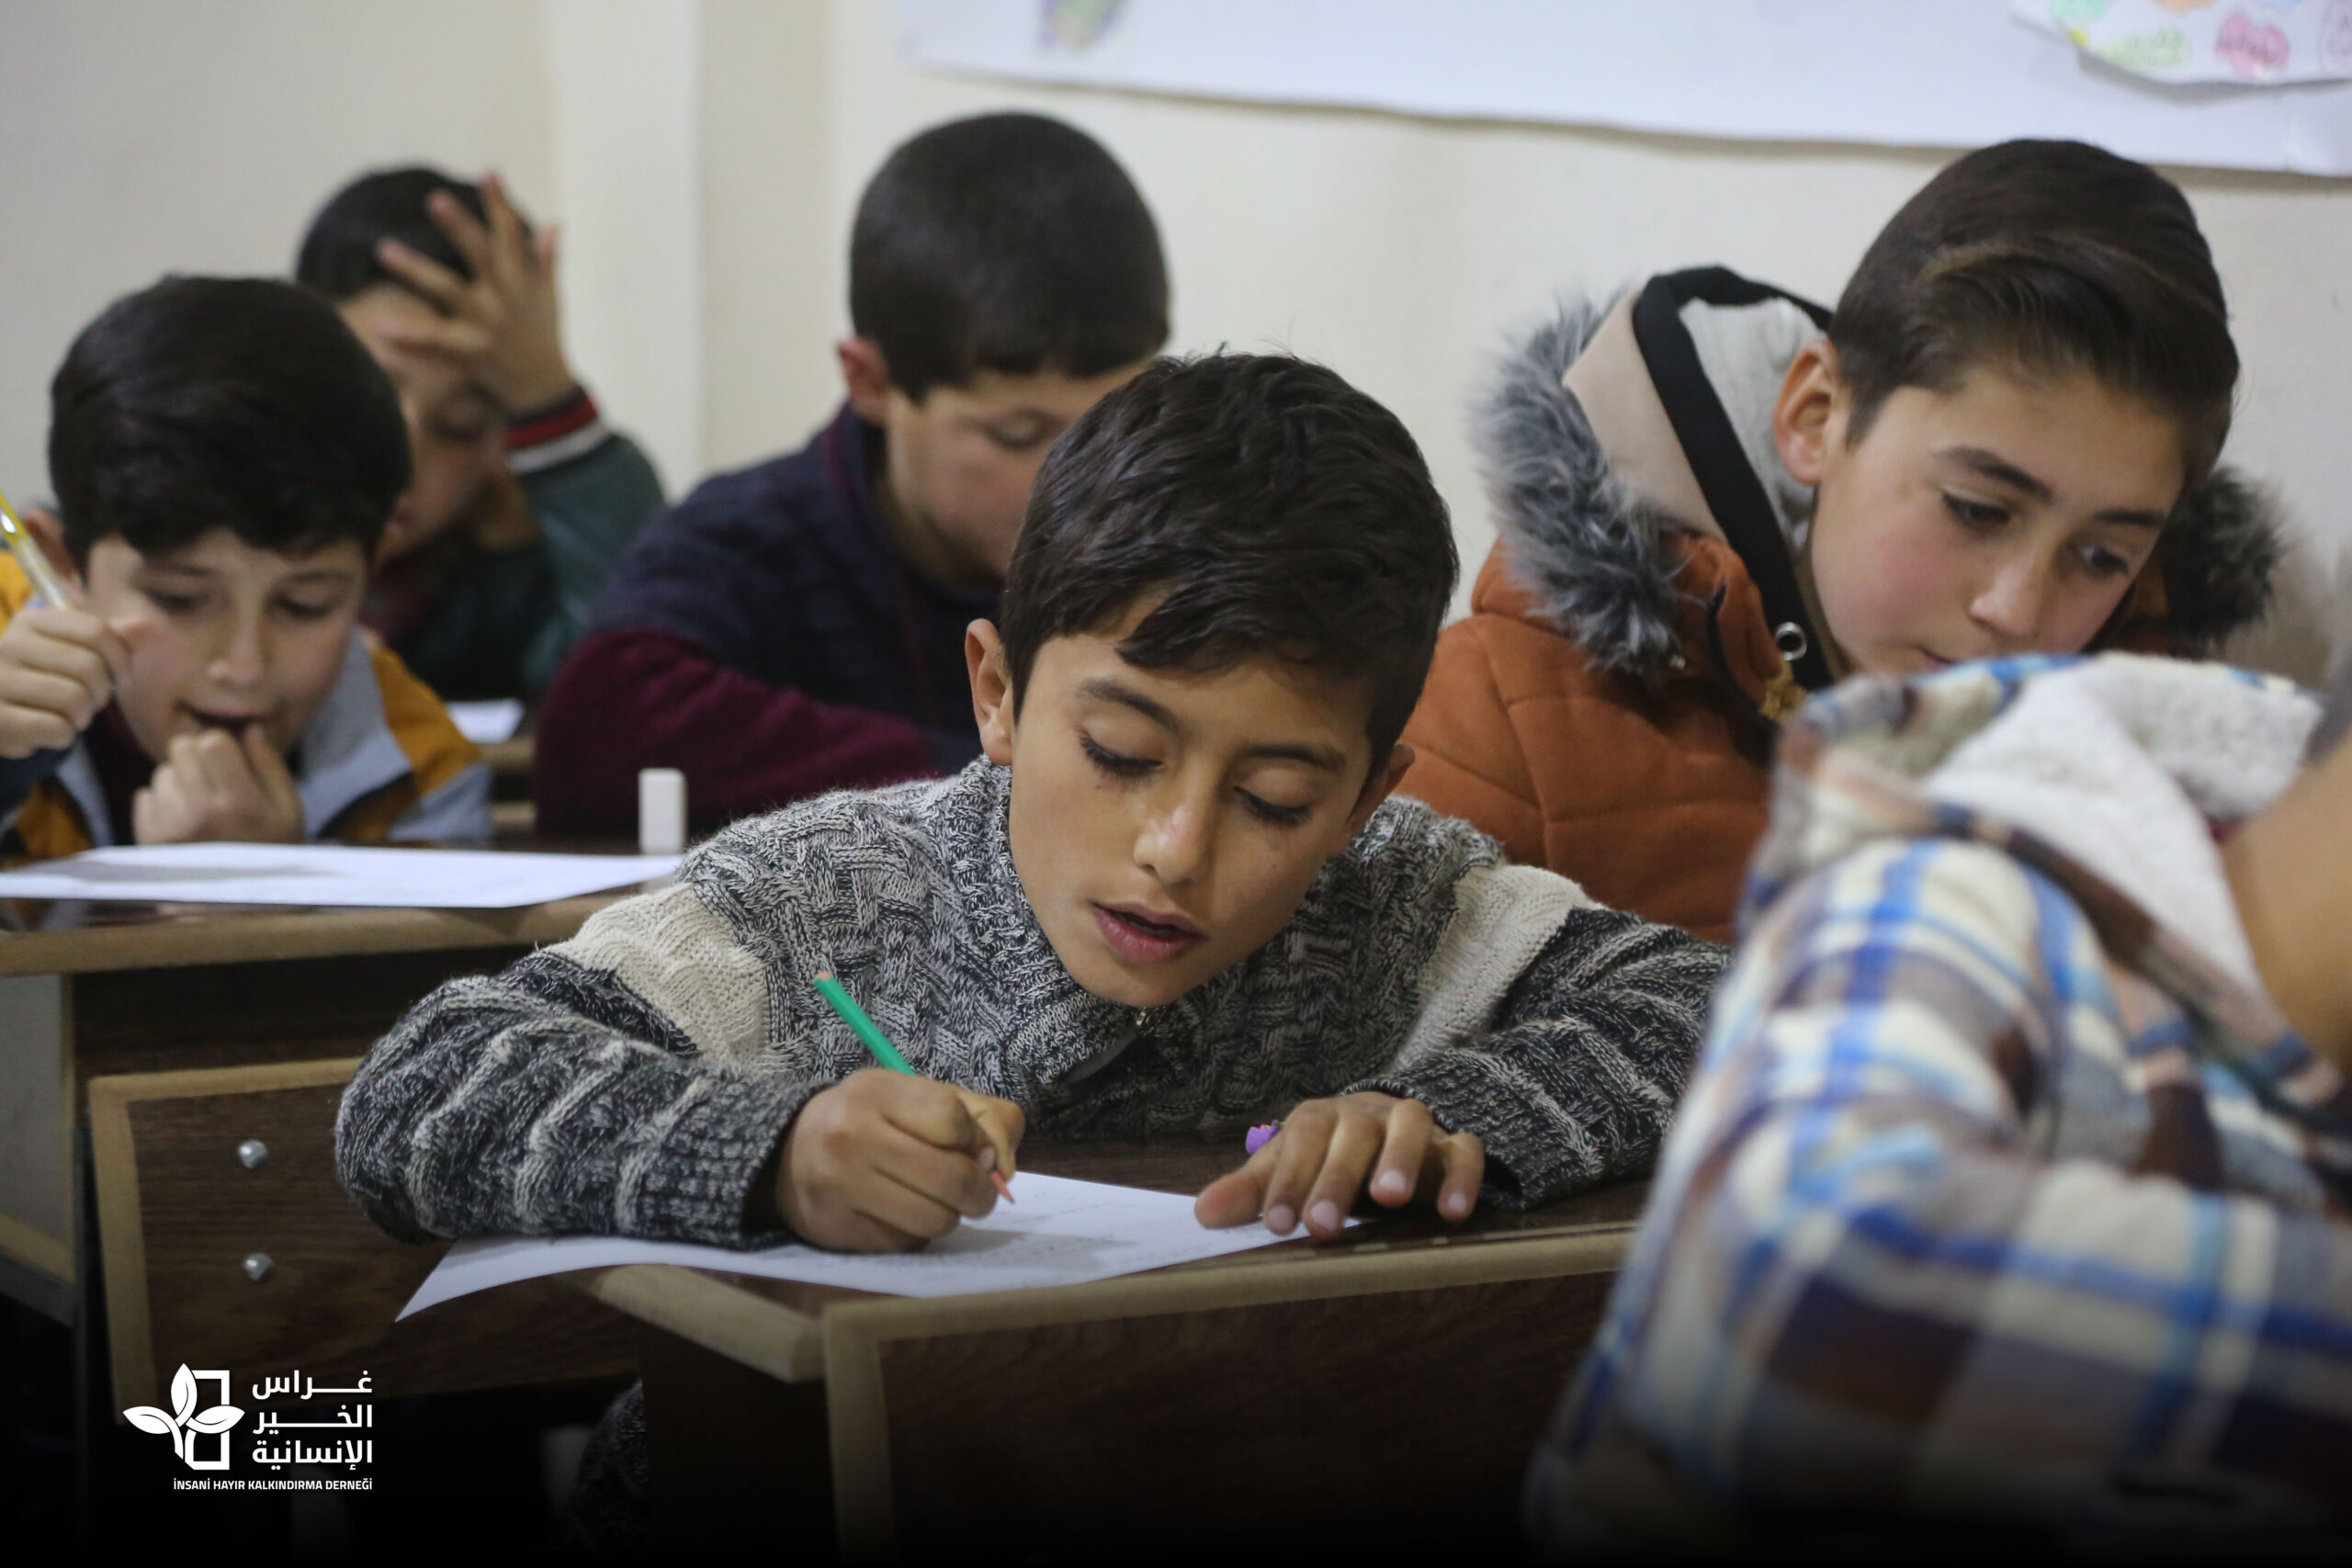 مدرسة عائشة.. نور التعليم في ظلمات عمالة الأطفال في سوريا